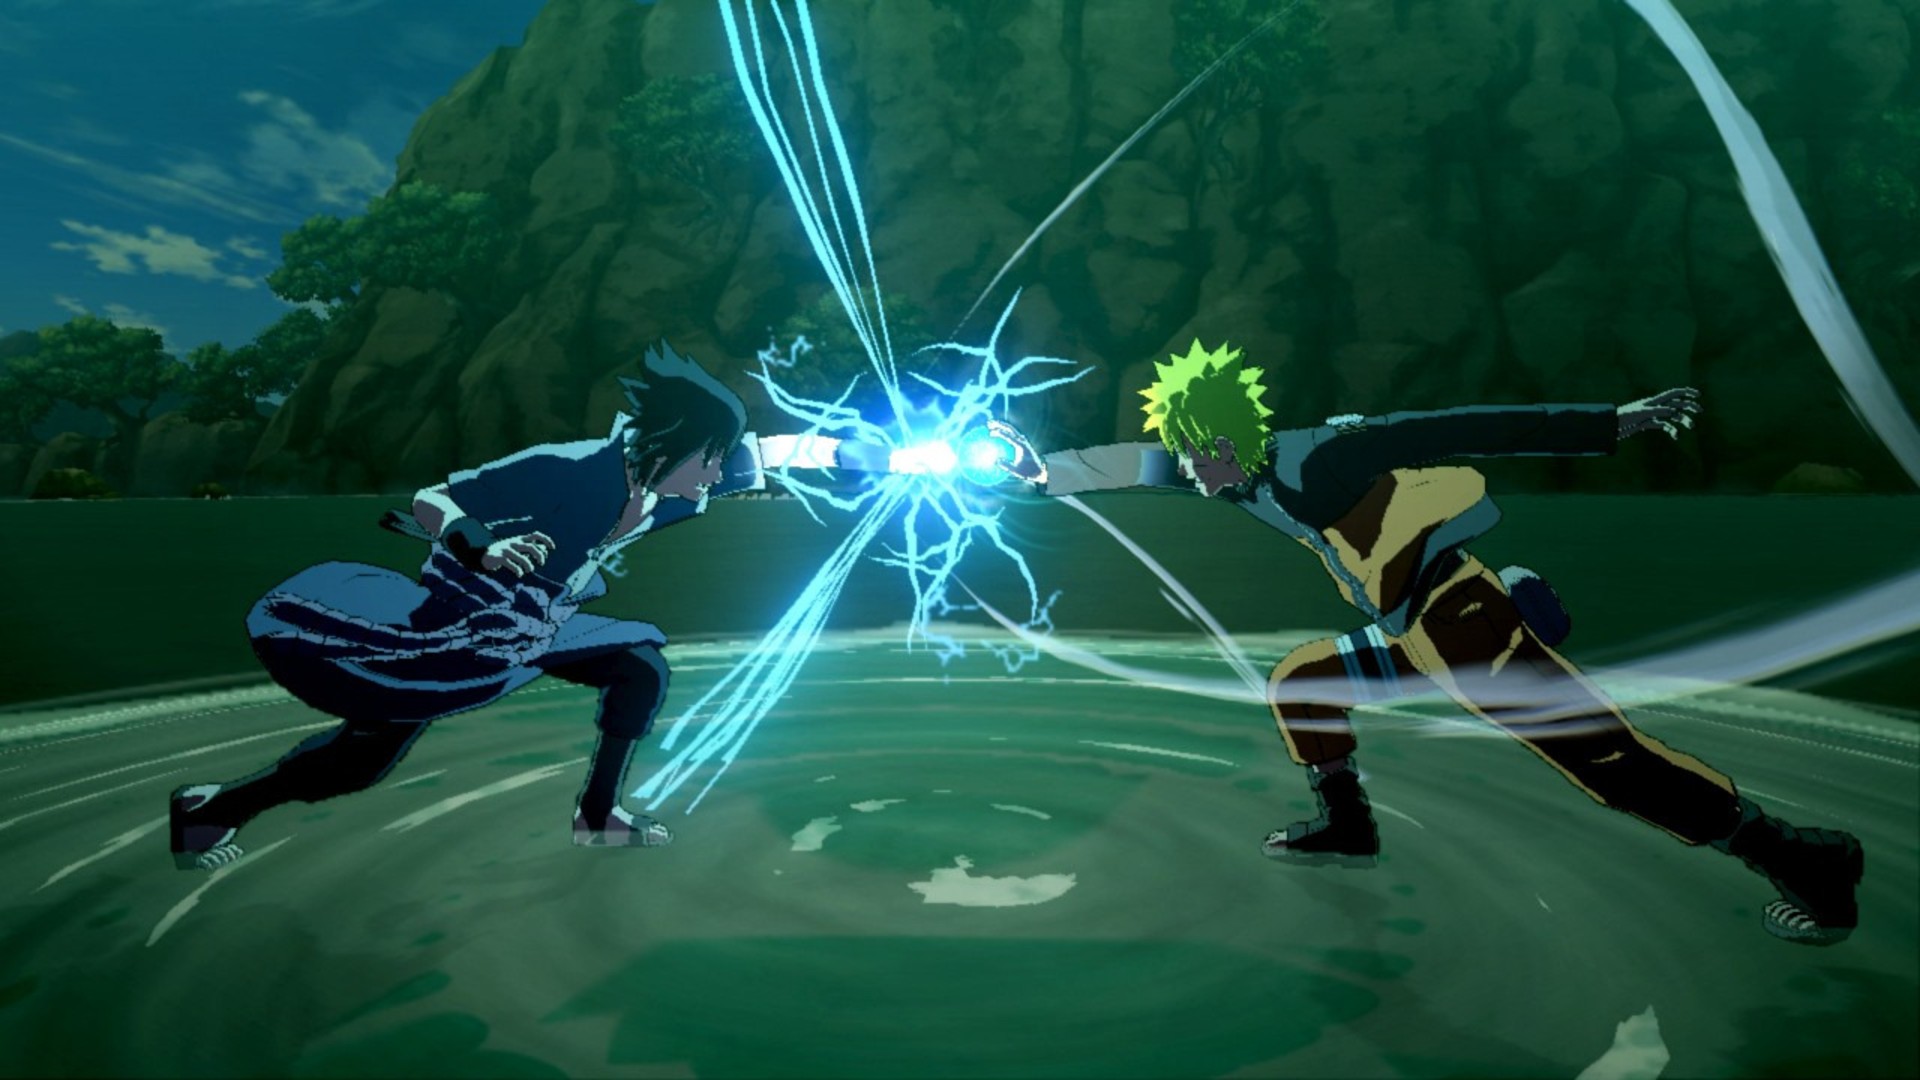 أفضل ألعاب أنيمي: ناروتو شيبودن: Ultimate Ninja Storm 3 انفجار كامل. تظهر الصورة مقاتلين اصطدمت بقبضاتهما وتوليد الكهرباء